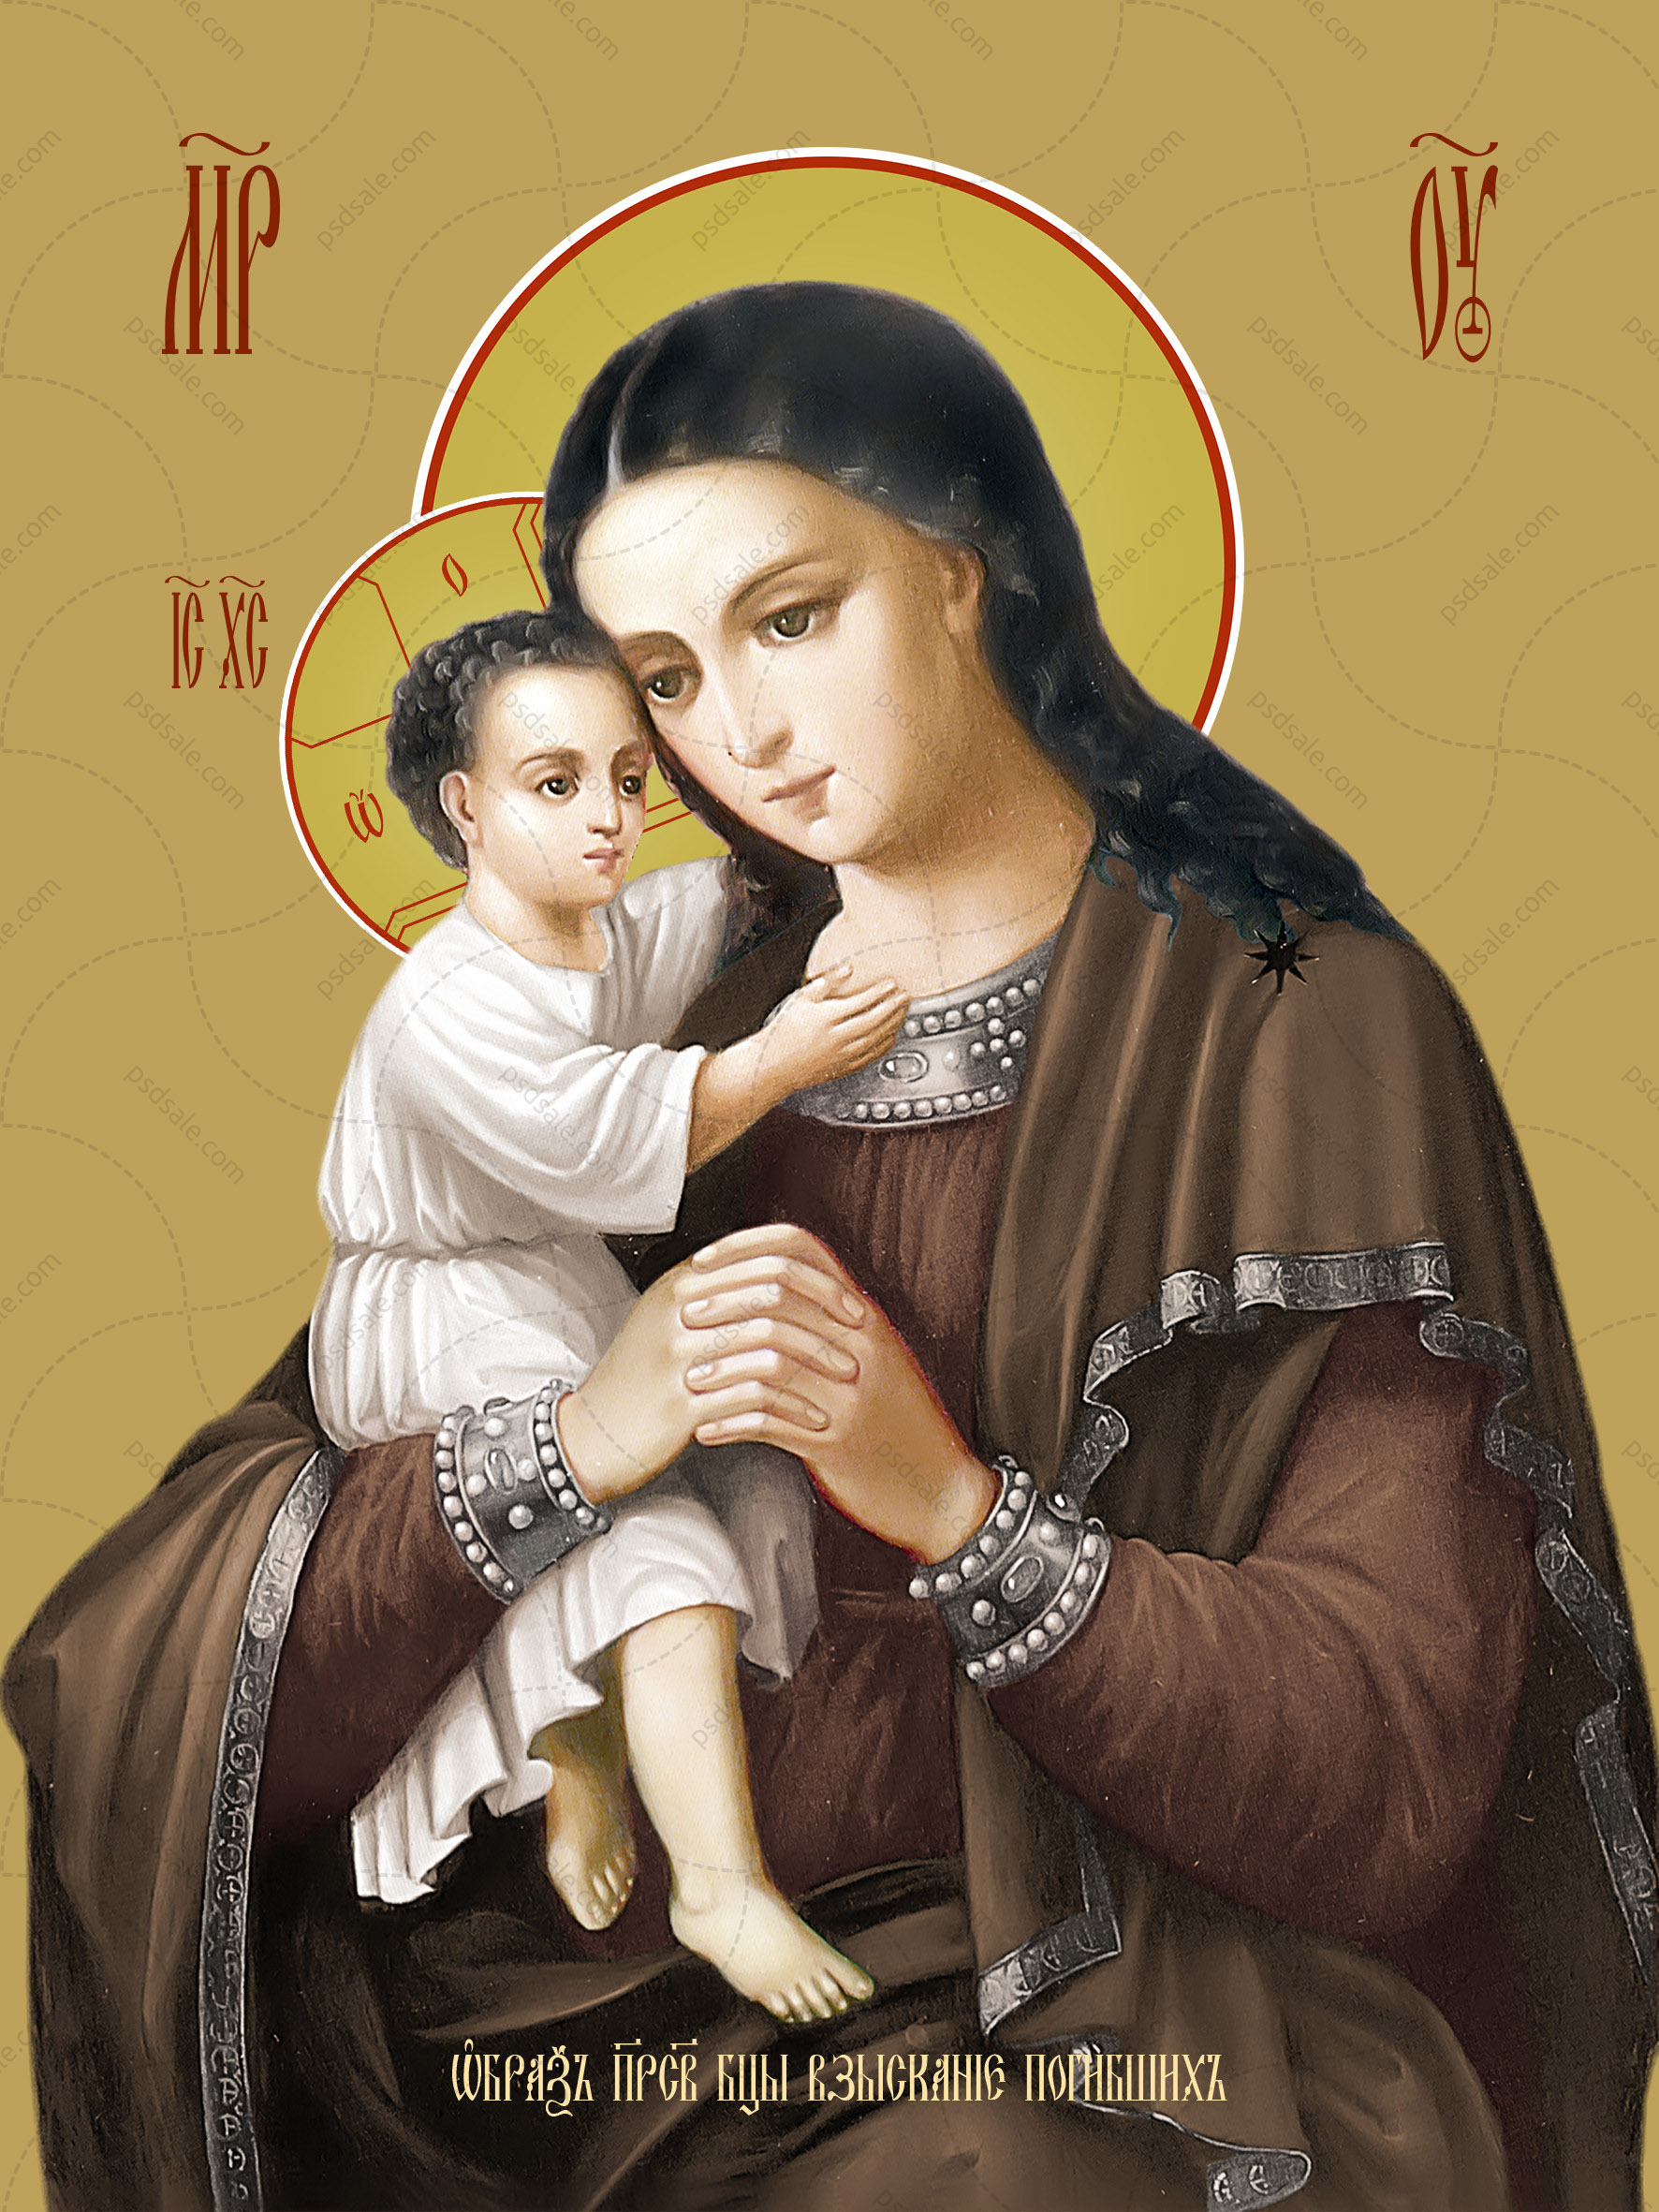 Ікона Божої матері "Стягнення загиблих"